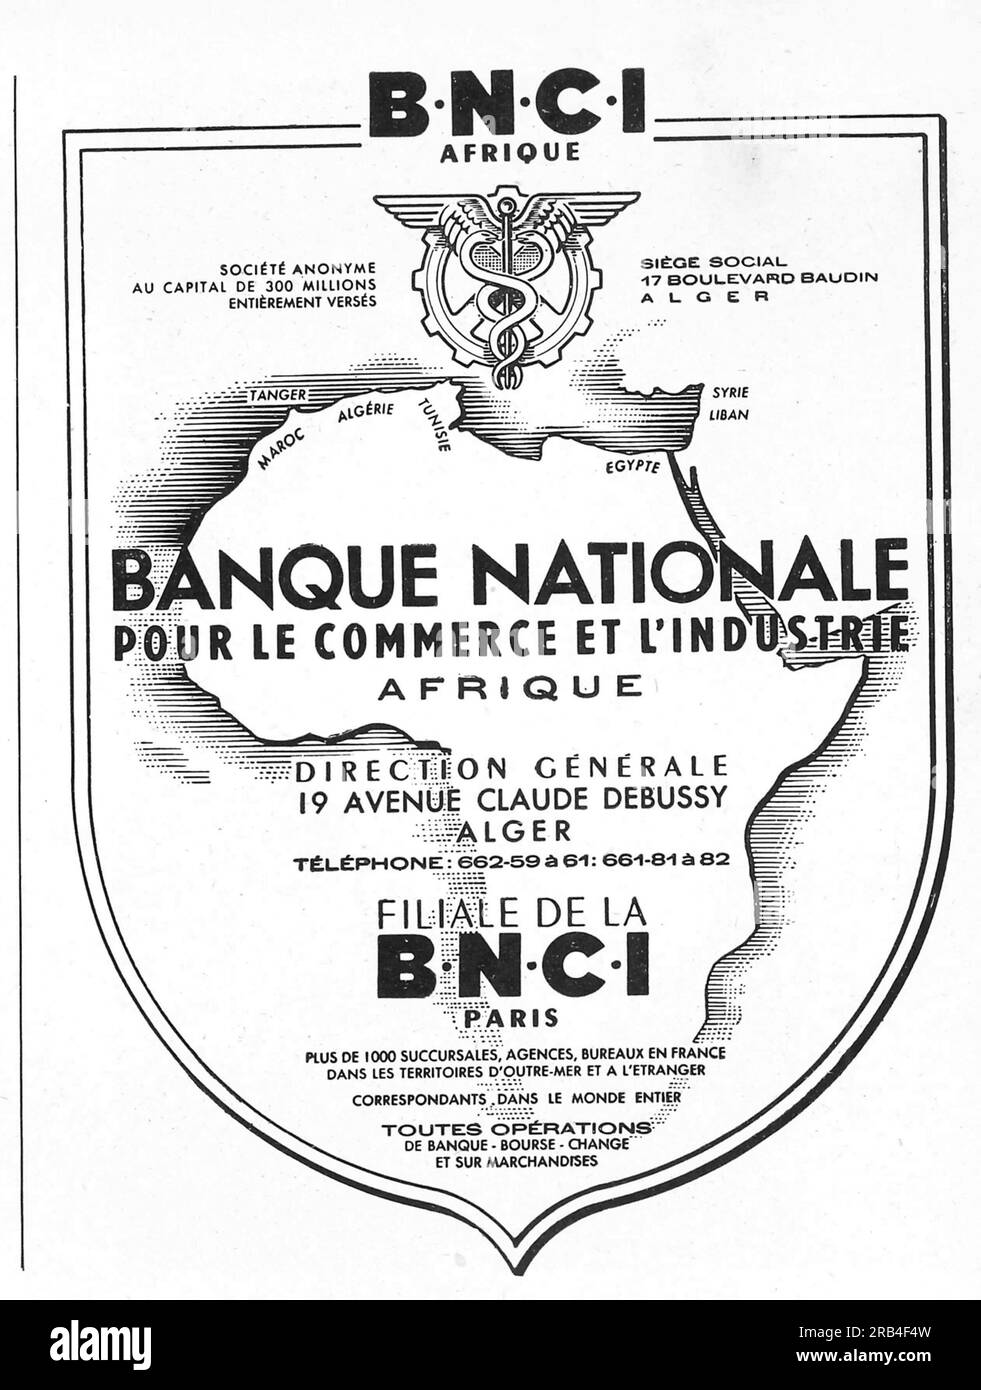 Banque nationale pour le commerce et l'industrie Afrique Bank advertisiment in a French magazine 1950 Stock Photo